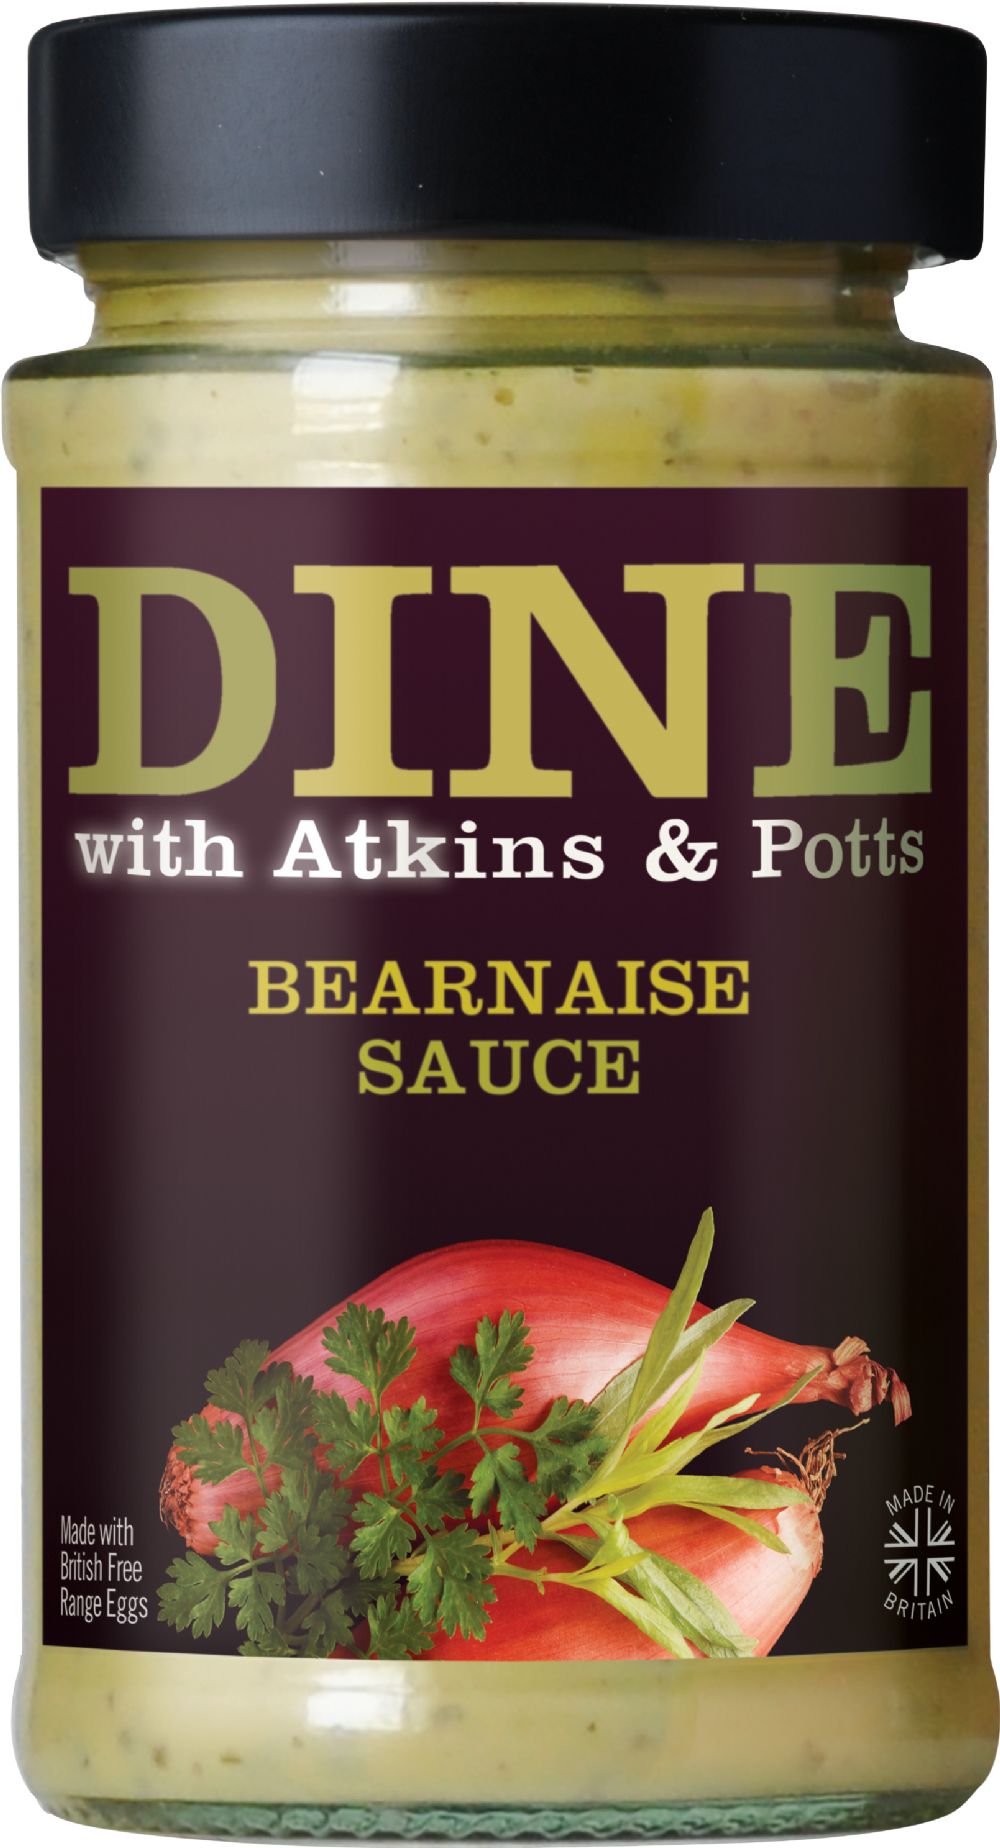 Atkins & Potts Bearnaise Other Sauces, Pastes